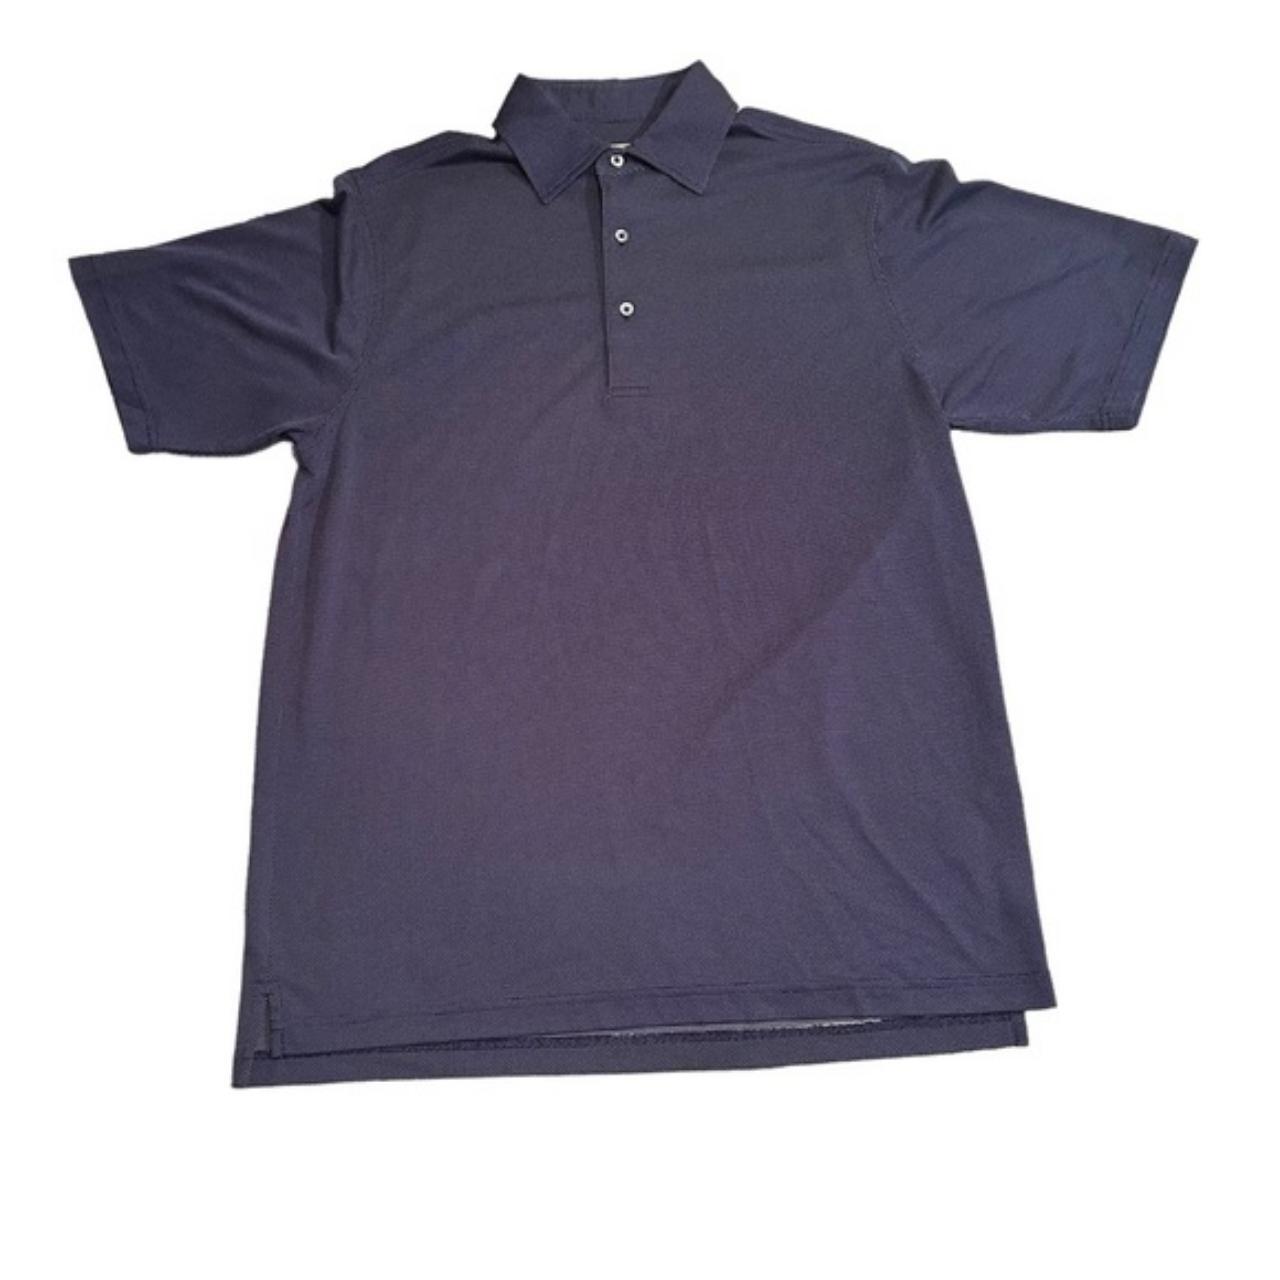 A Donald Ross Polo Golf Shirt. Dark Blue and a... - Depop